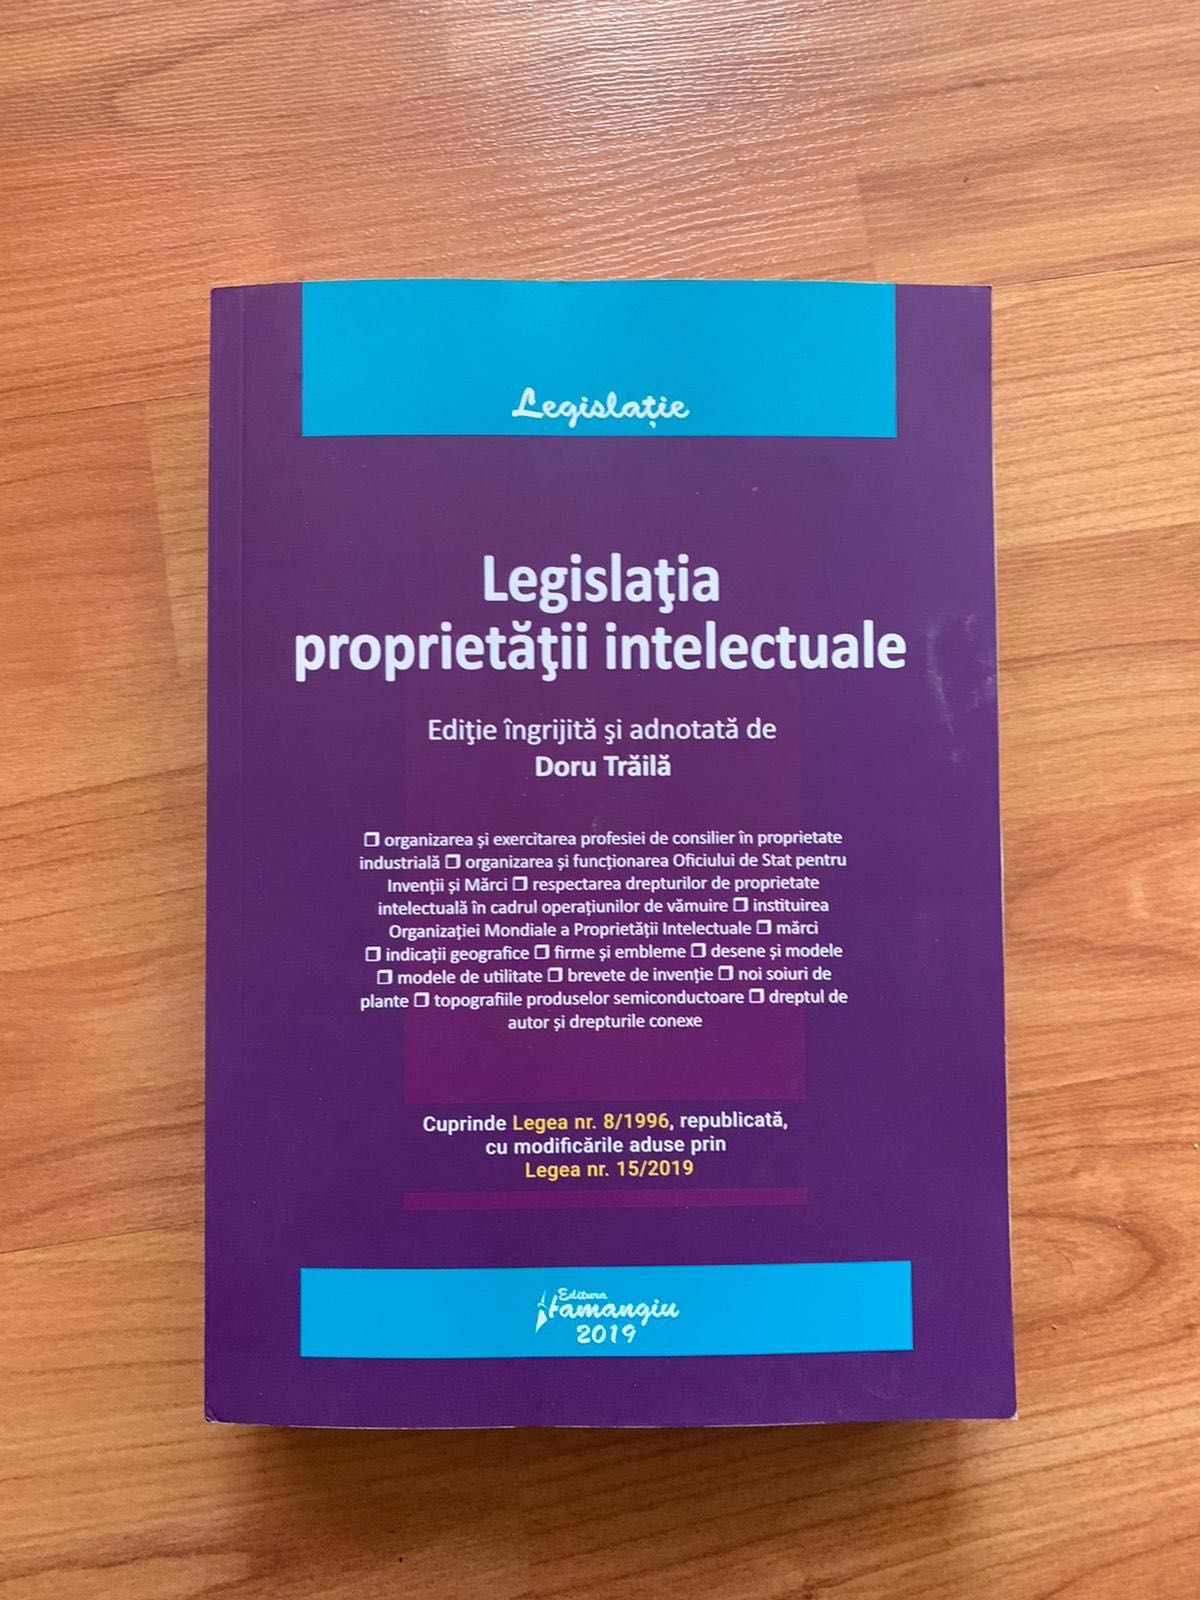 Legislatia proprietatii intelectuale, autor: Doru Traila.